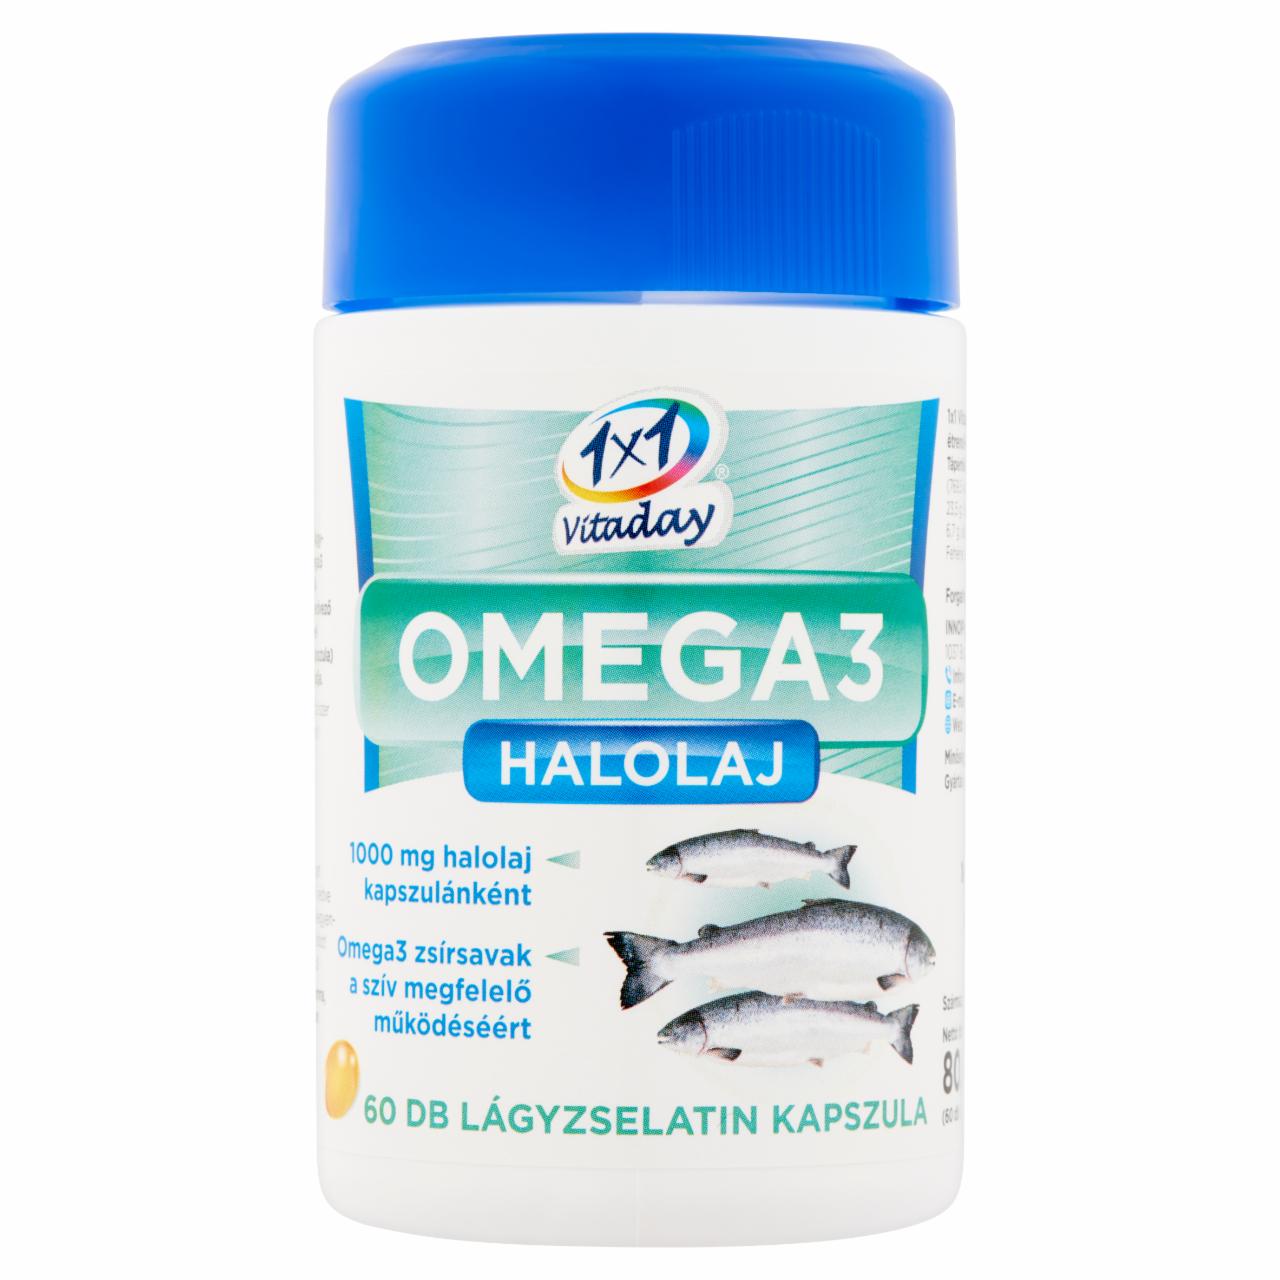 Képek - 1x1 Vitaday Omega3 Halolaj étrend-kiegészítő lágyzselatin kapszula 60 db 80,4 g